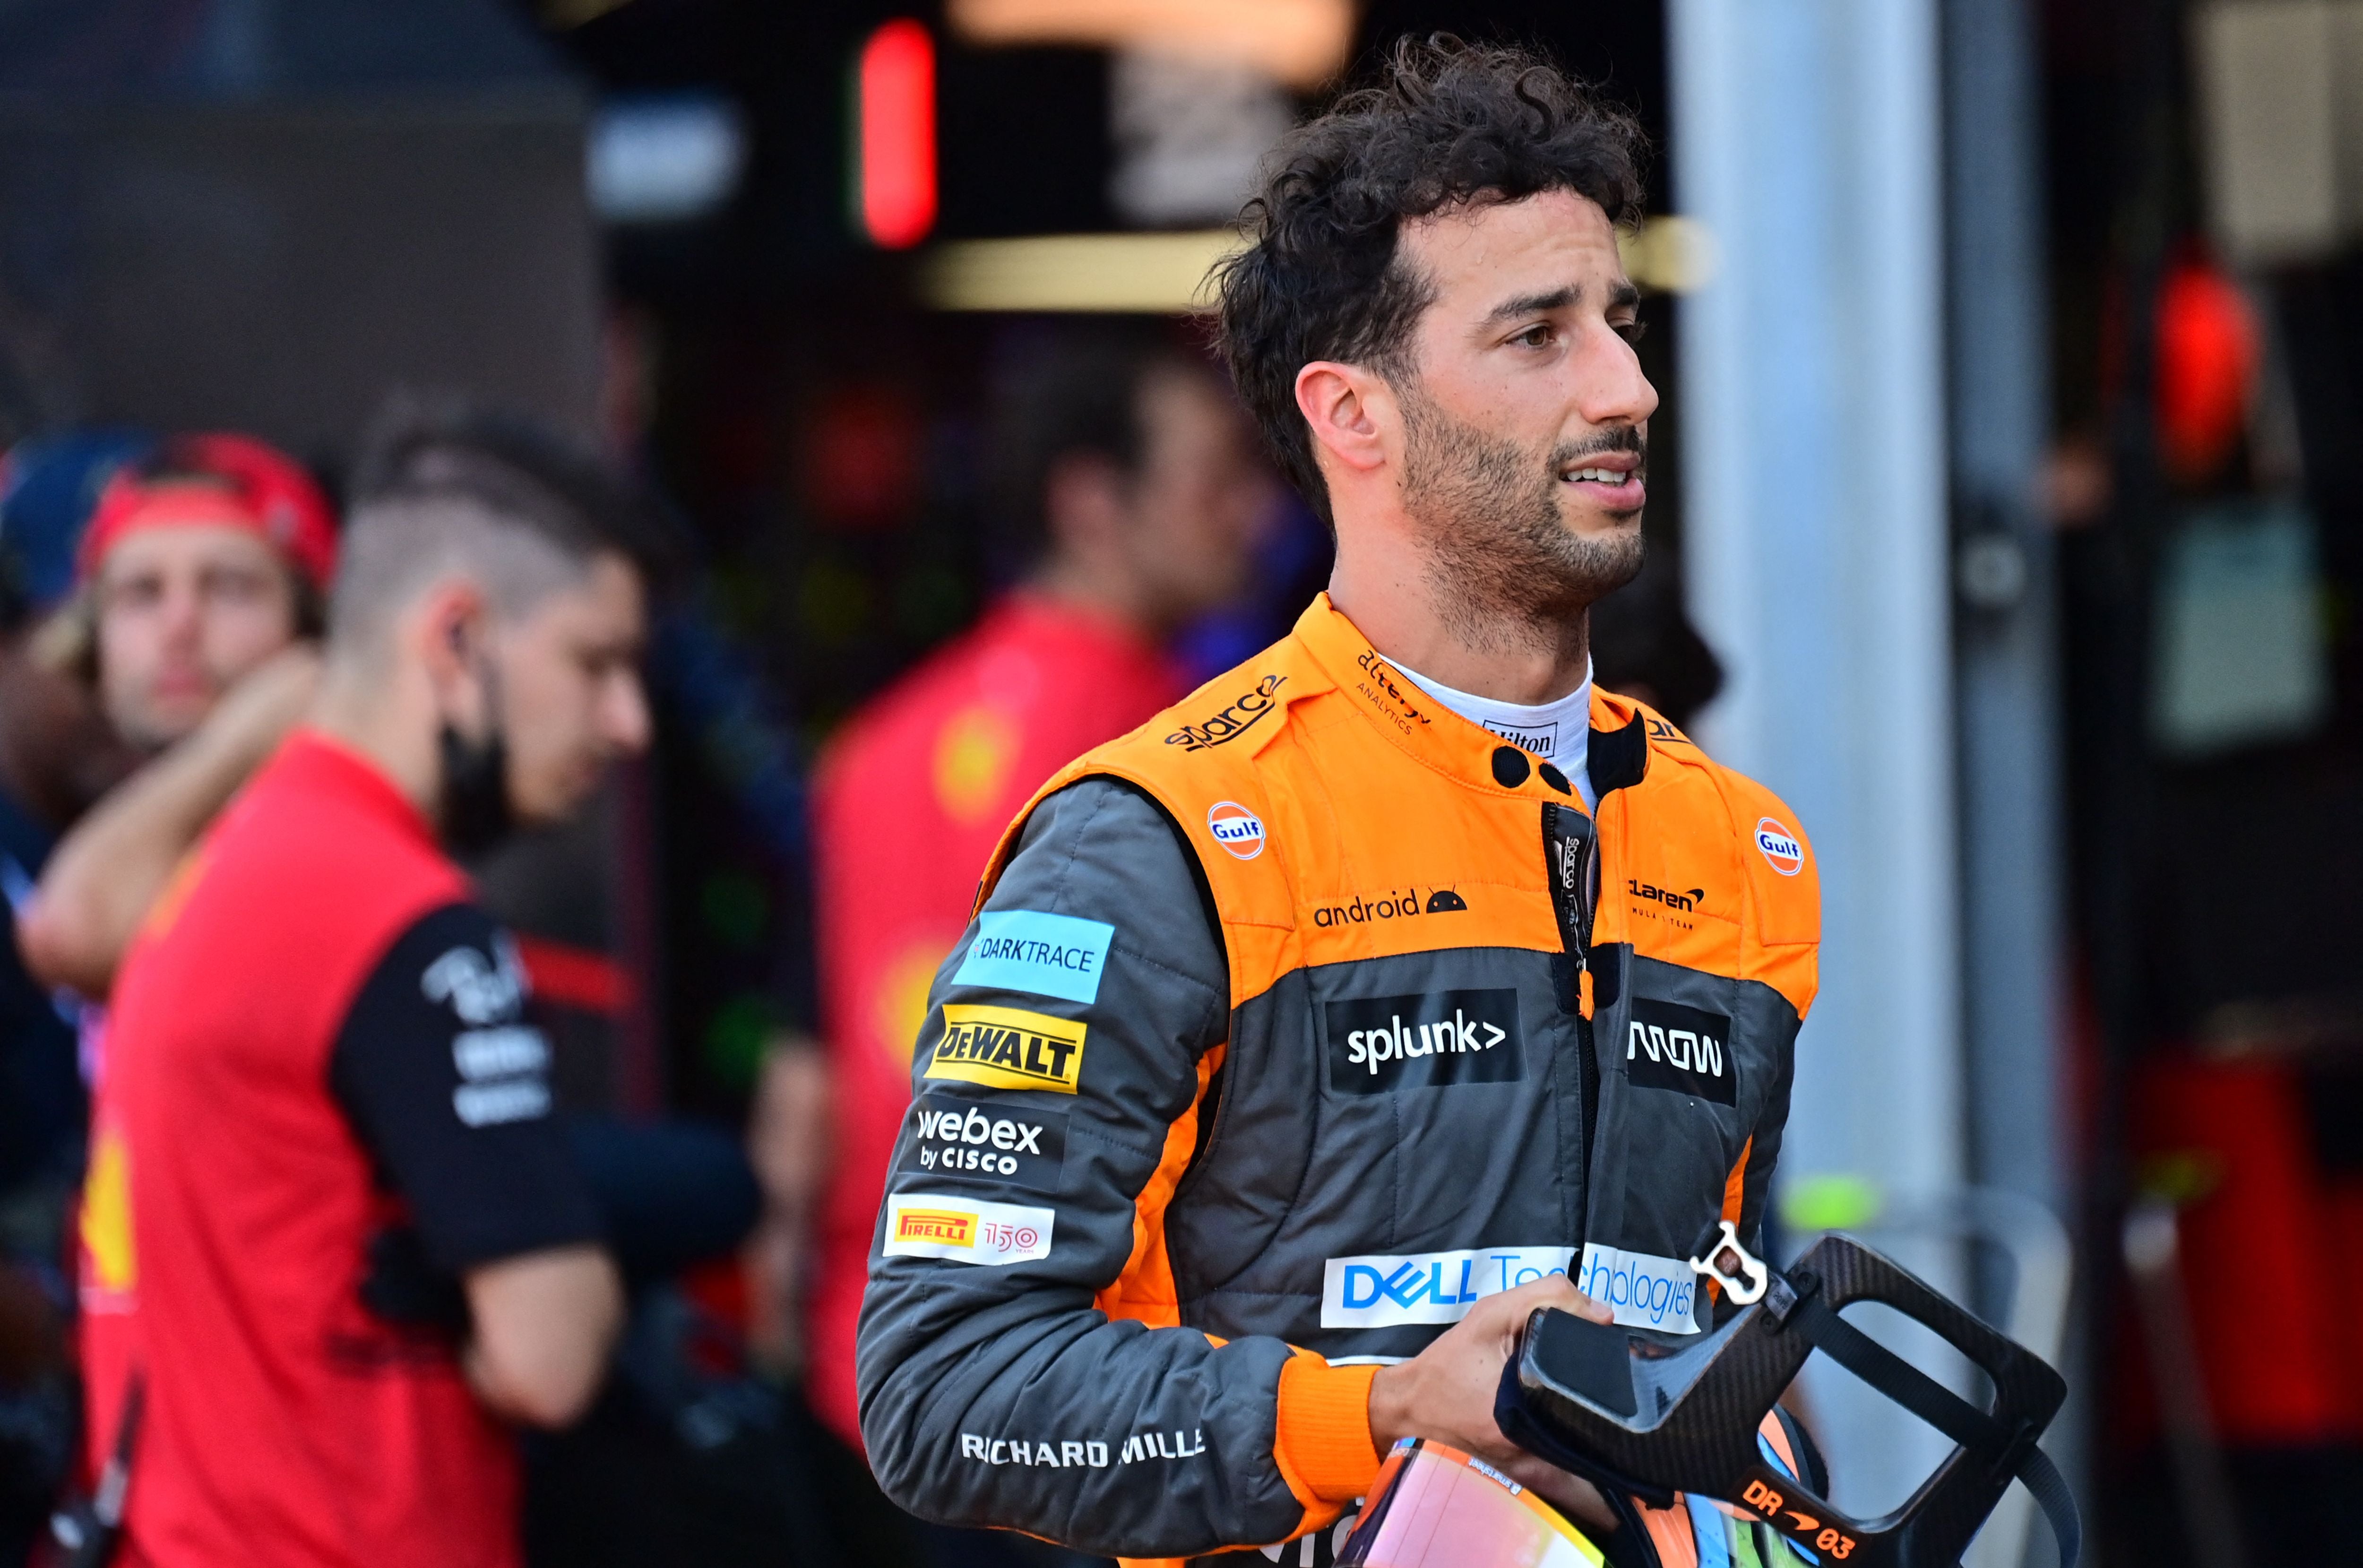 Daniel Ricciardo has struggled so far in 2022